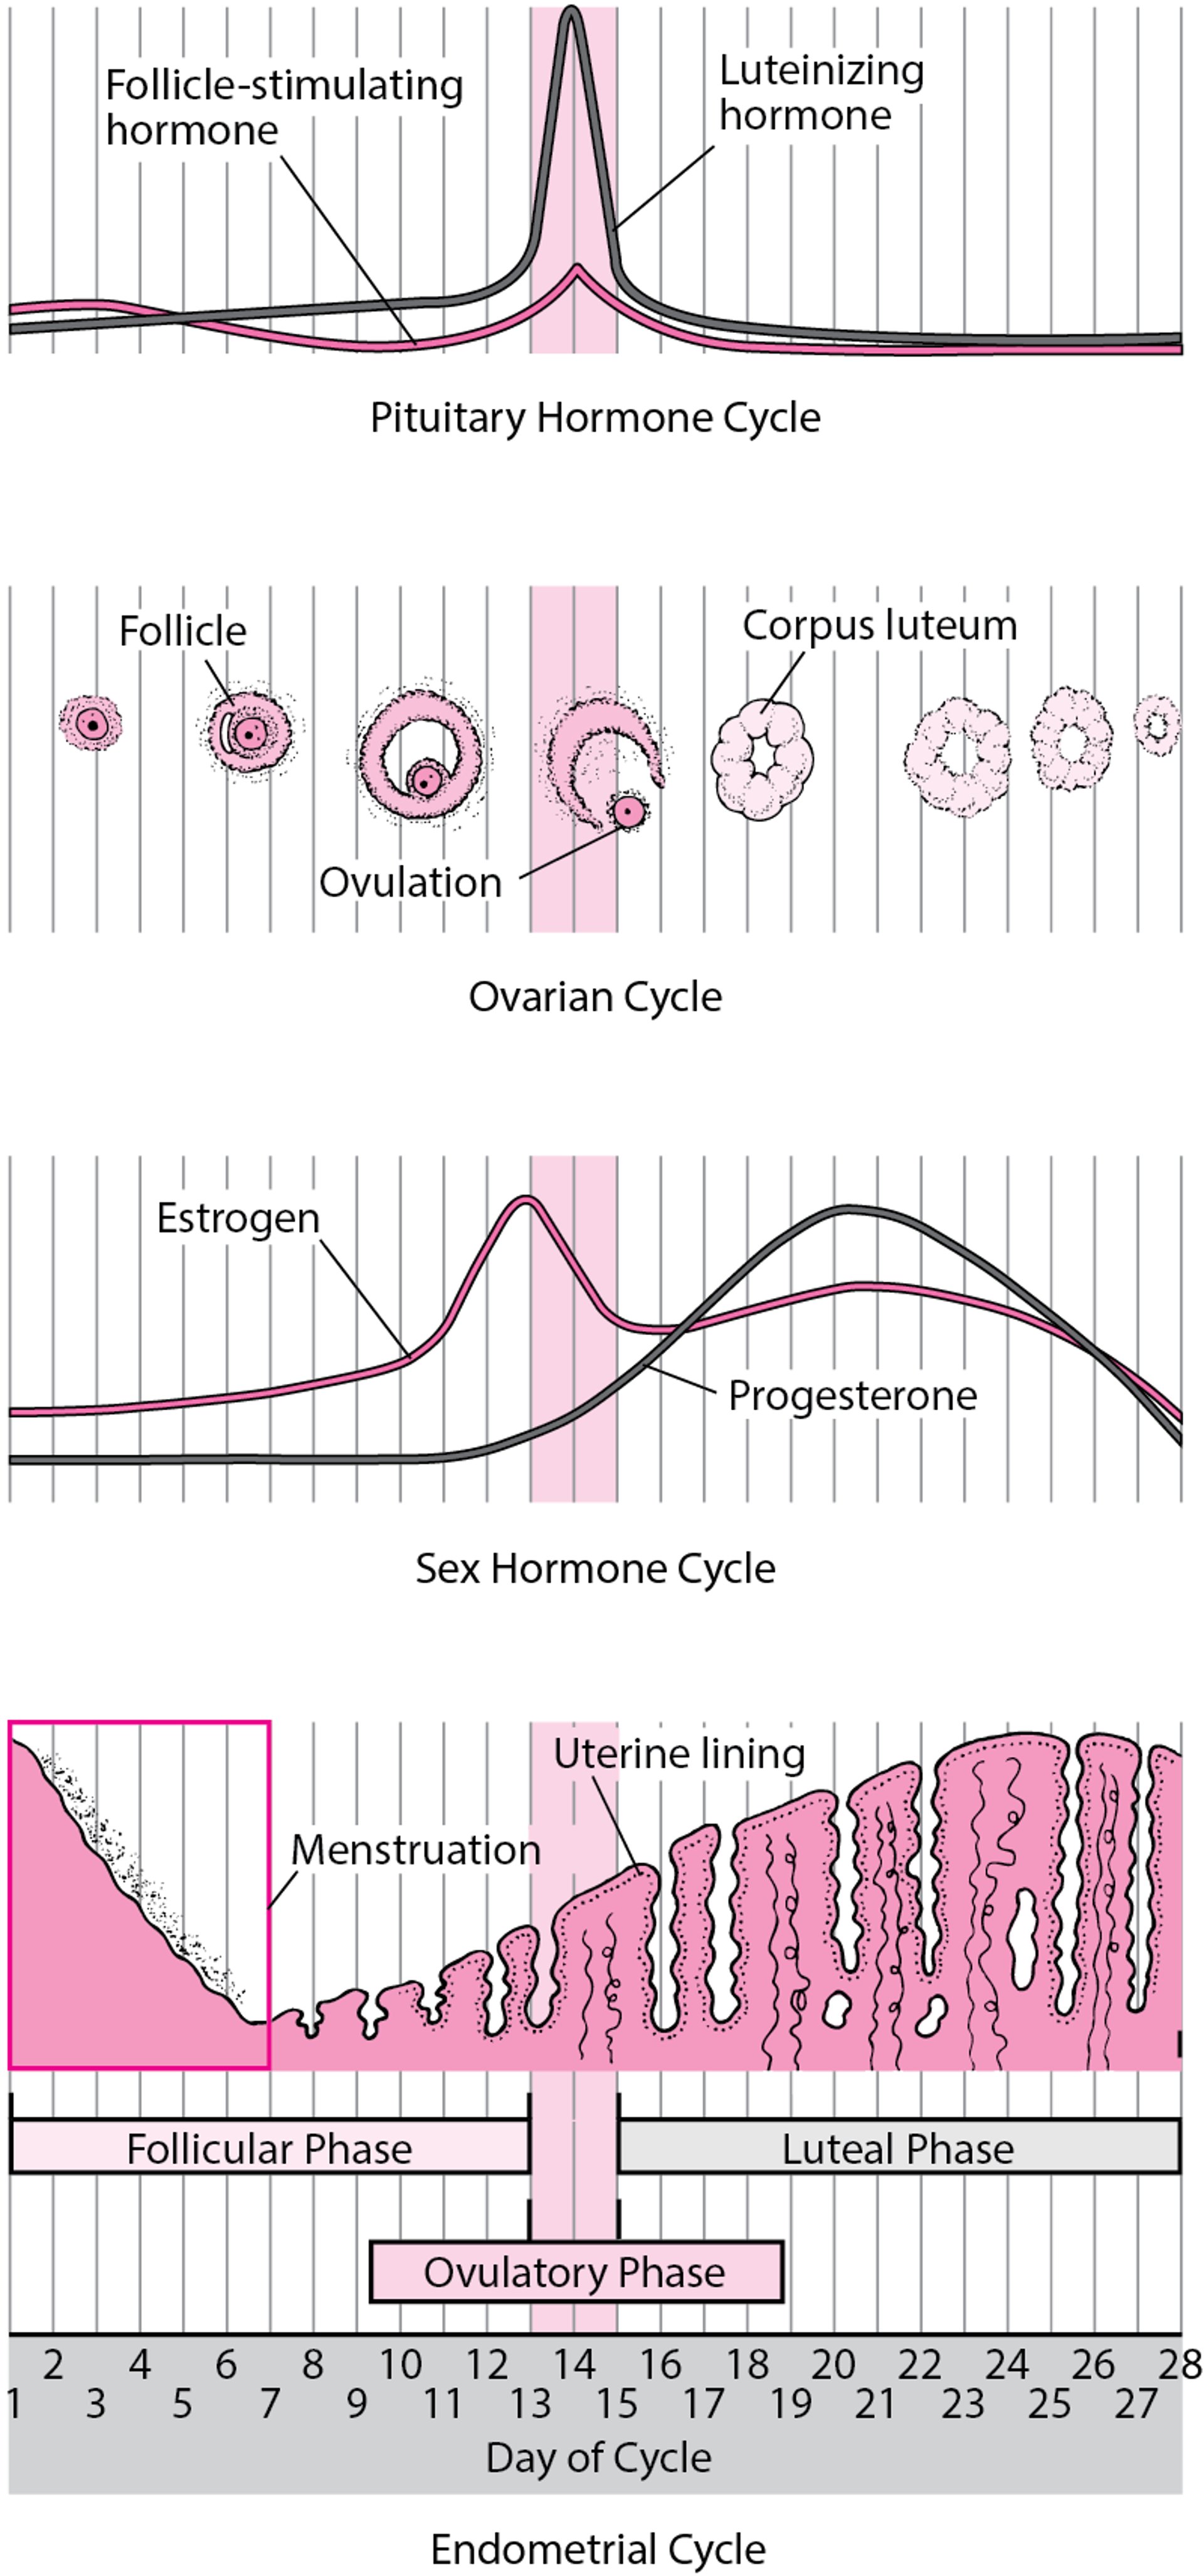 Veränderungen während des Menstruationszyklus